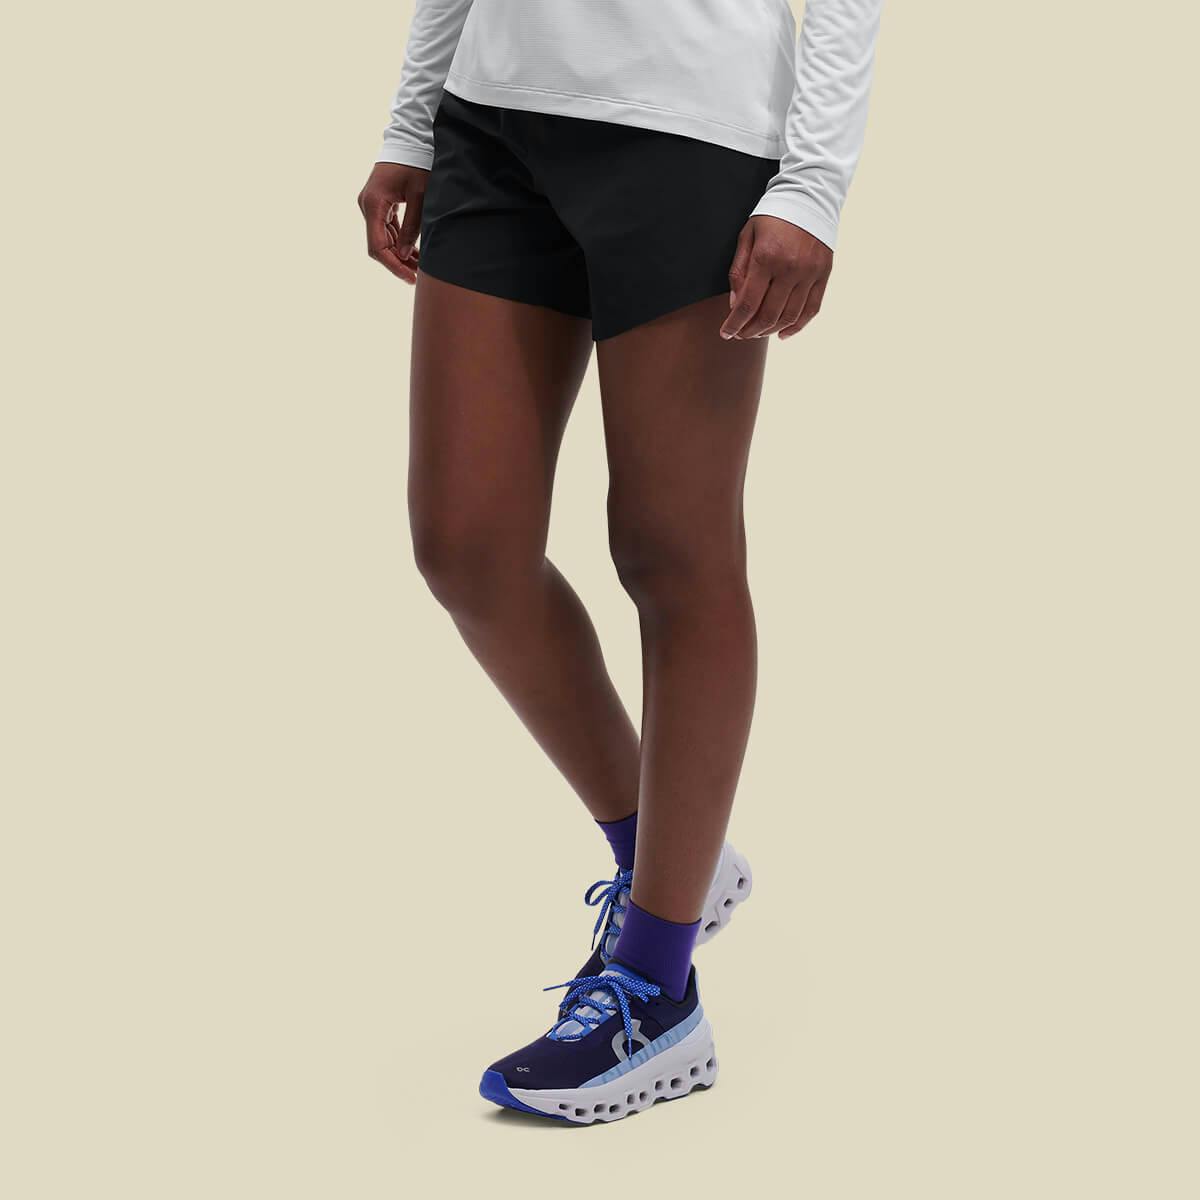 5" Running Shorts - Black Women